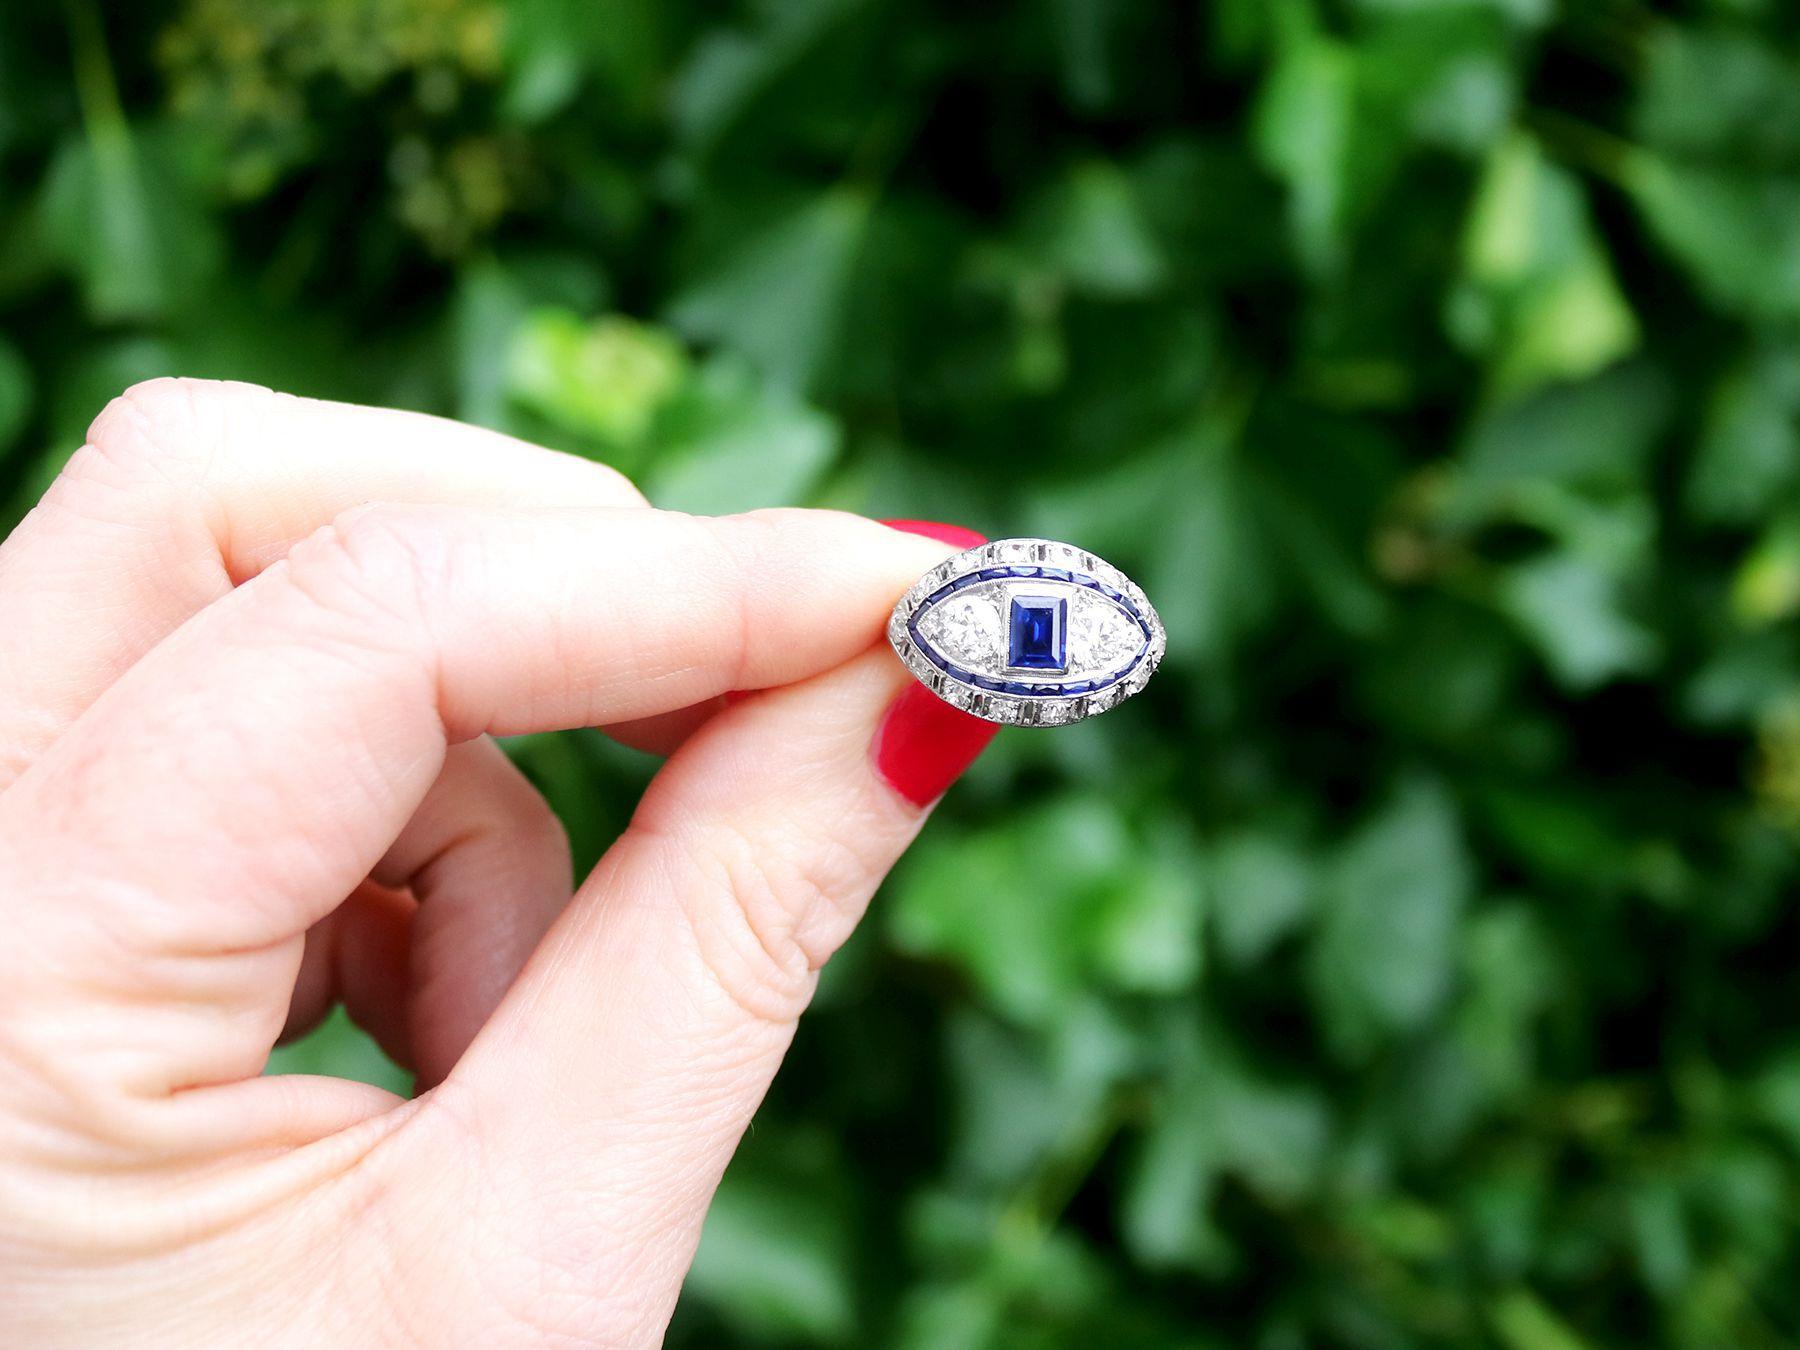 Ein atemberaubender, feiner und beeindruckender antiker französischer Art-Deco-Cocktailring aus Platin mit 1,10 Karat Basalt-Saphir und 2,45 Karat Diamant; Teil unserer vielfältigen Sammlung antiker Ringe.

Dieser atemberaubende, feine und